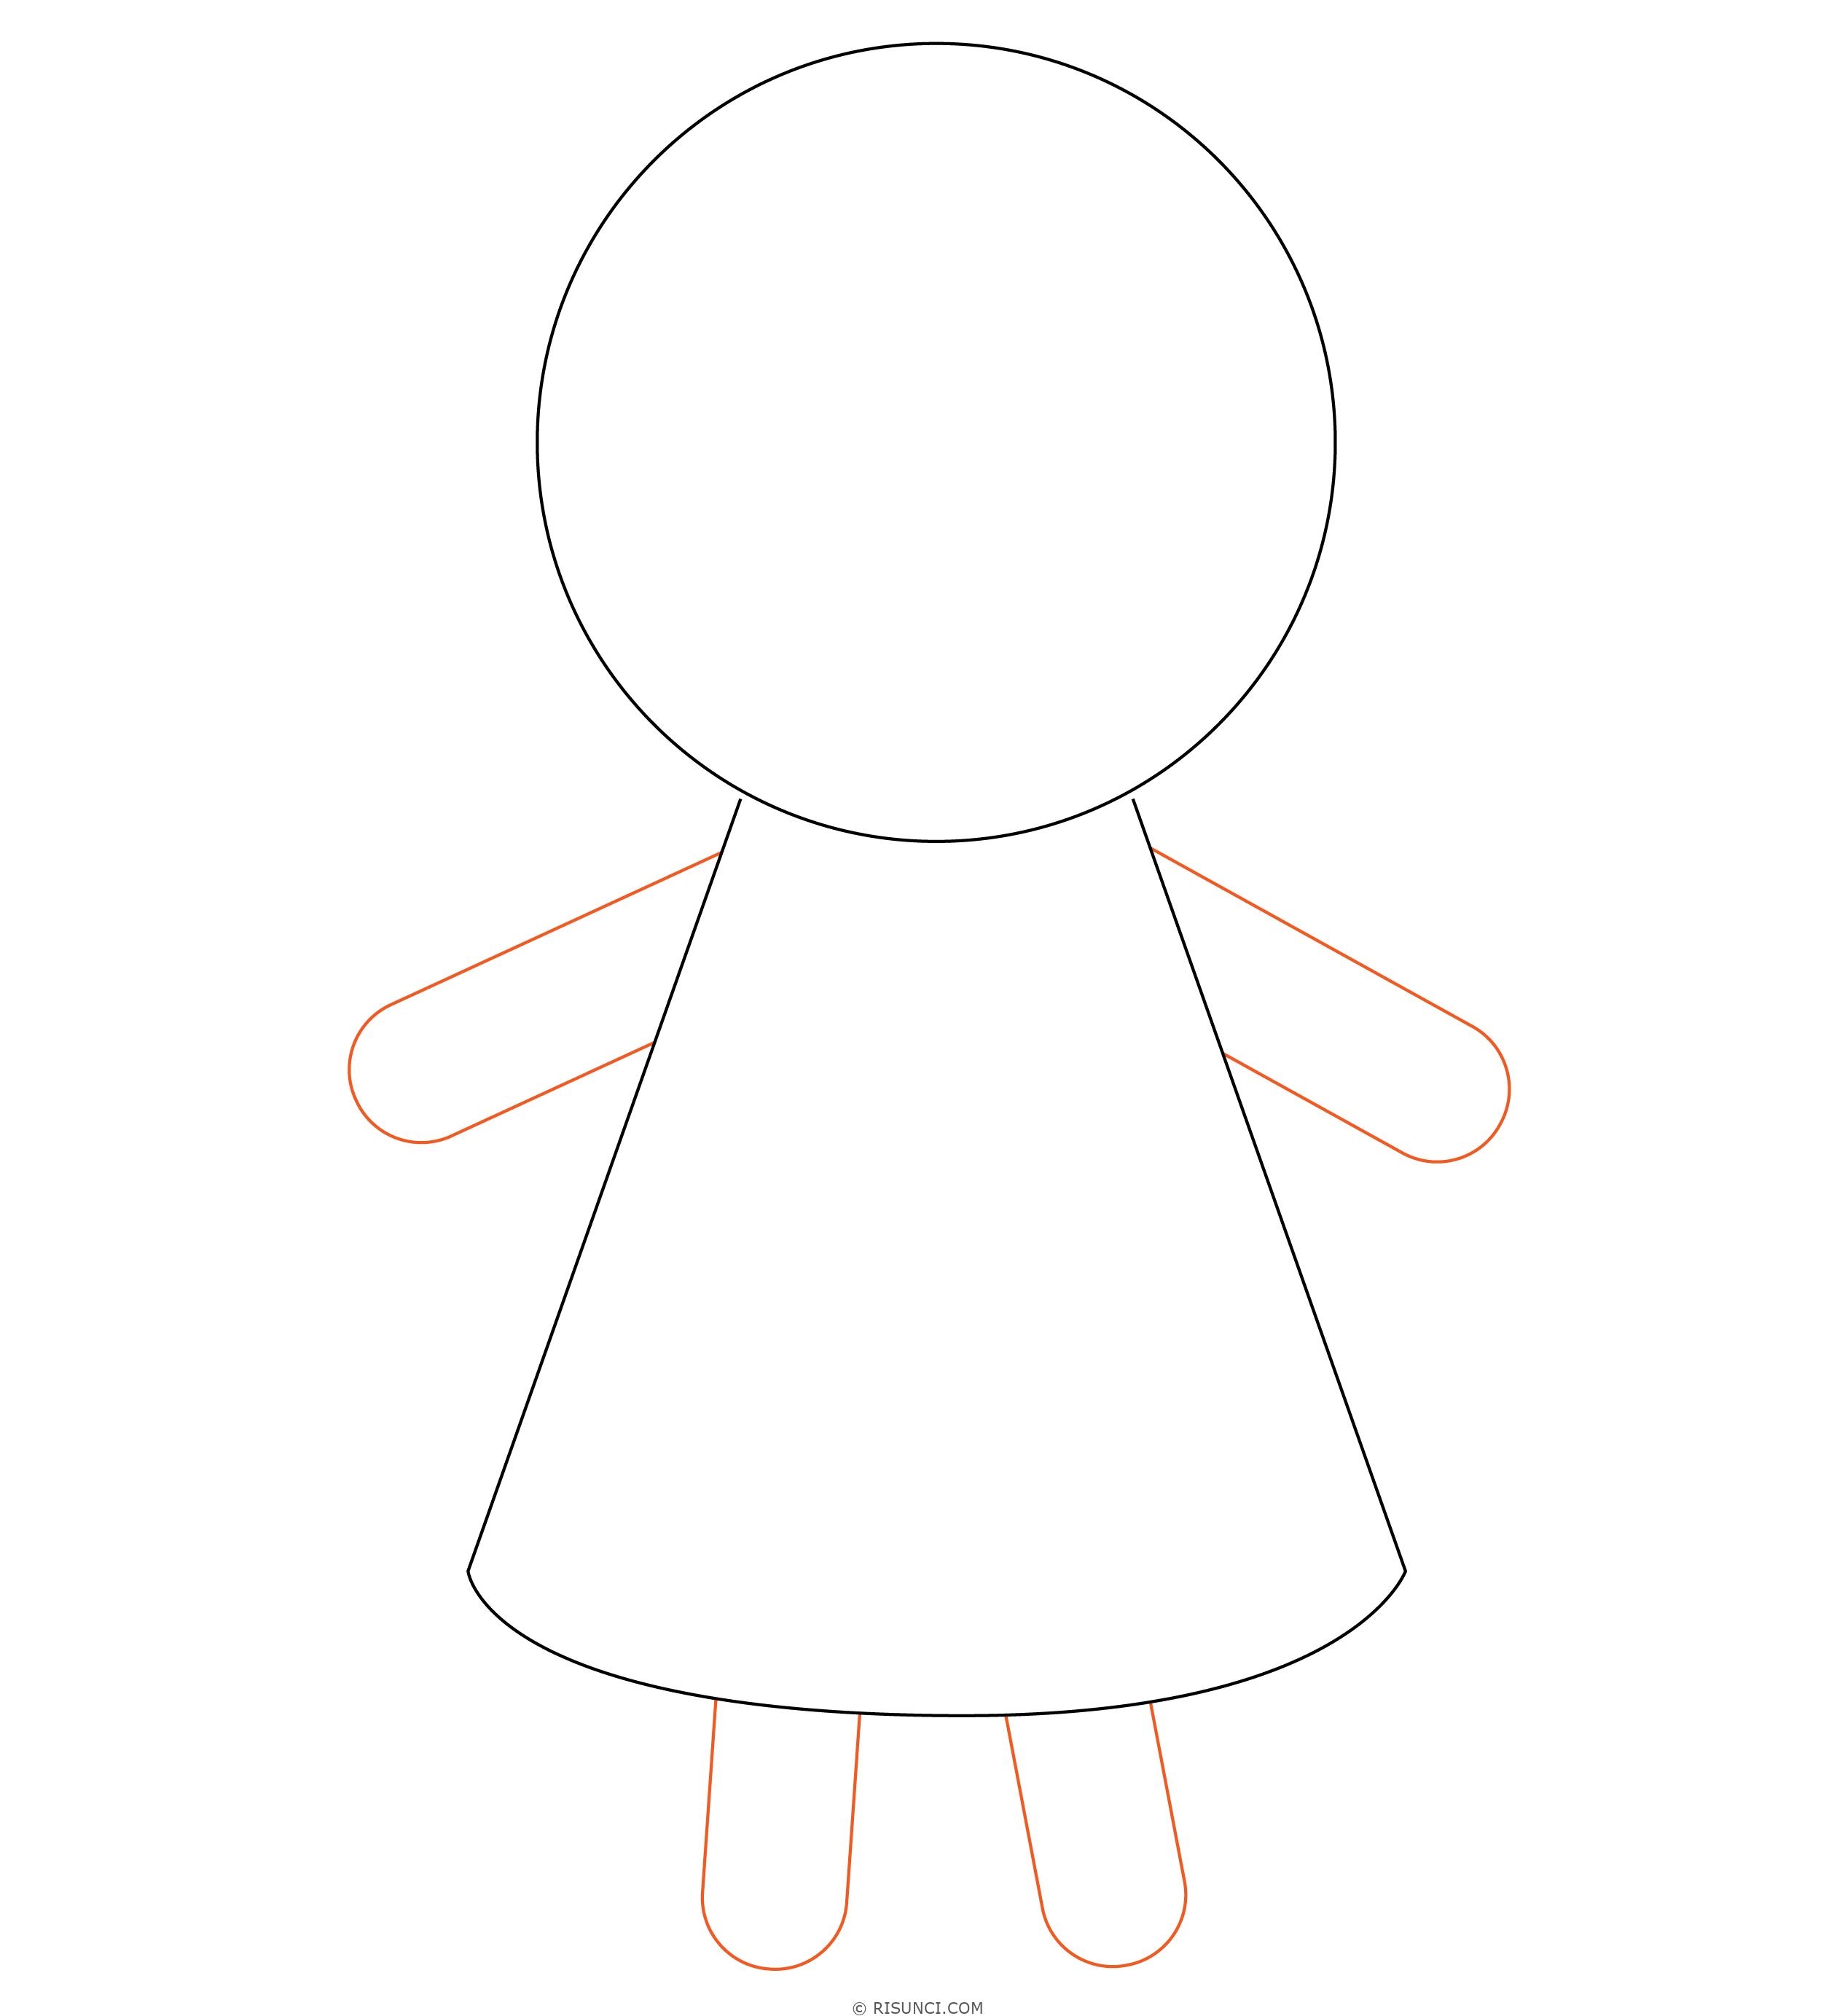 Как нарисовать куклу пошагово: легкий урок рисования для детей (схема + фото)